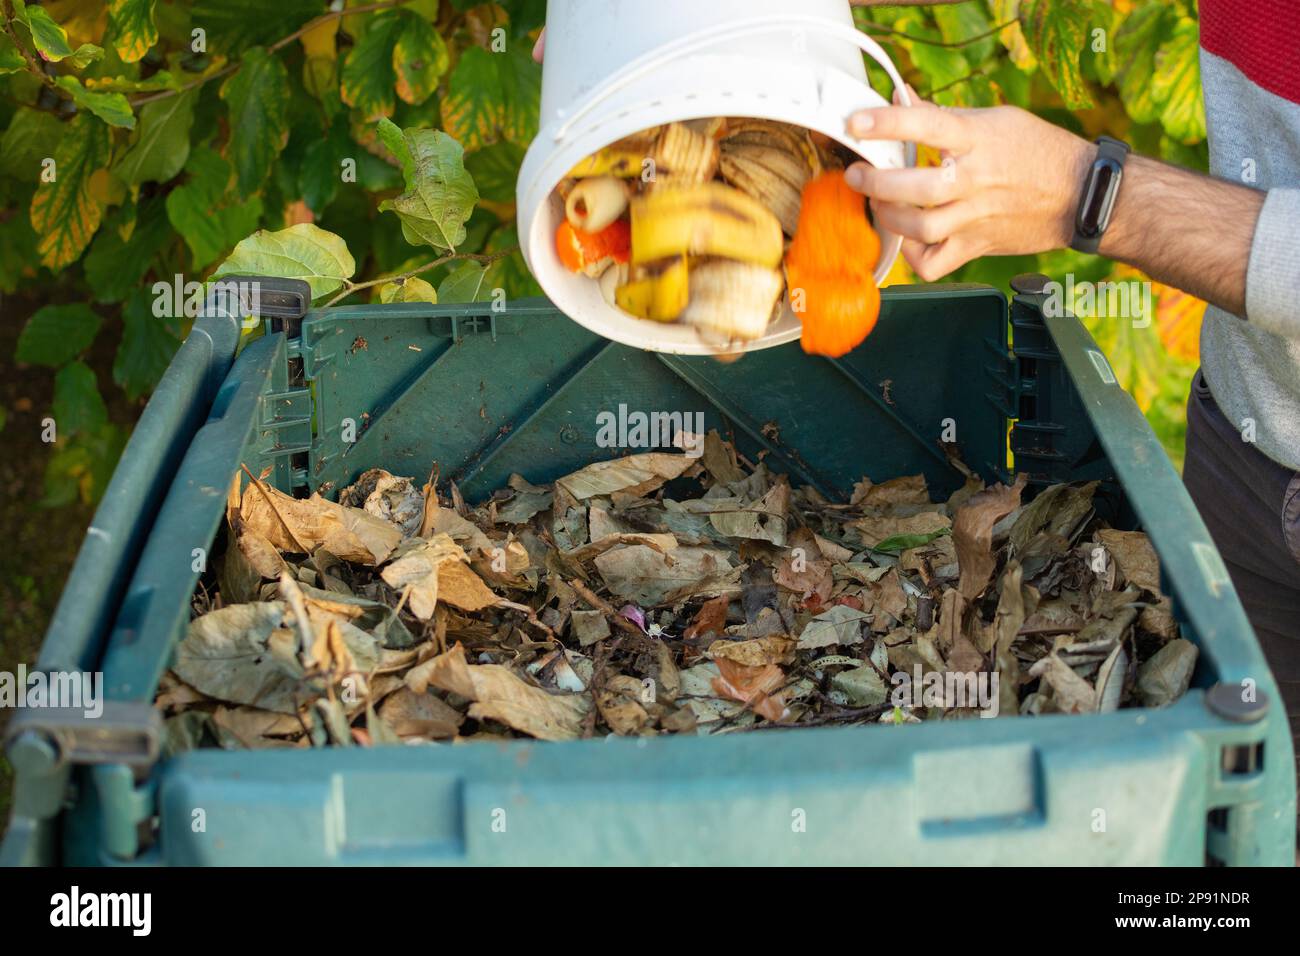 Ein junger Mann entleert einen Eimer mit organischem Abfall in einem Kompost-Behälter für den Außenbereich. Der Kompost-Behälter wird in einen Garten gestellt, um organischen Abfall zu recyceln Stockfoto